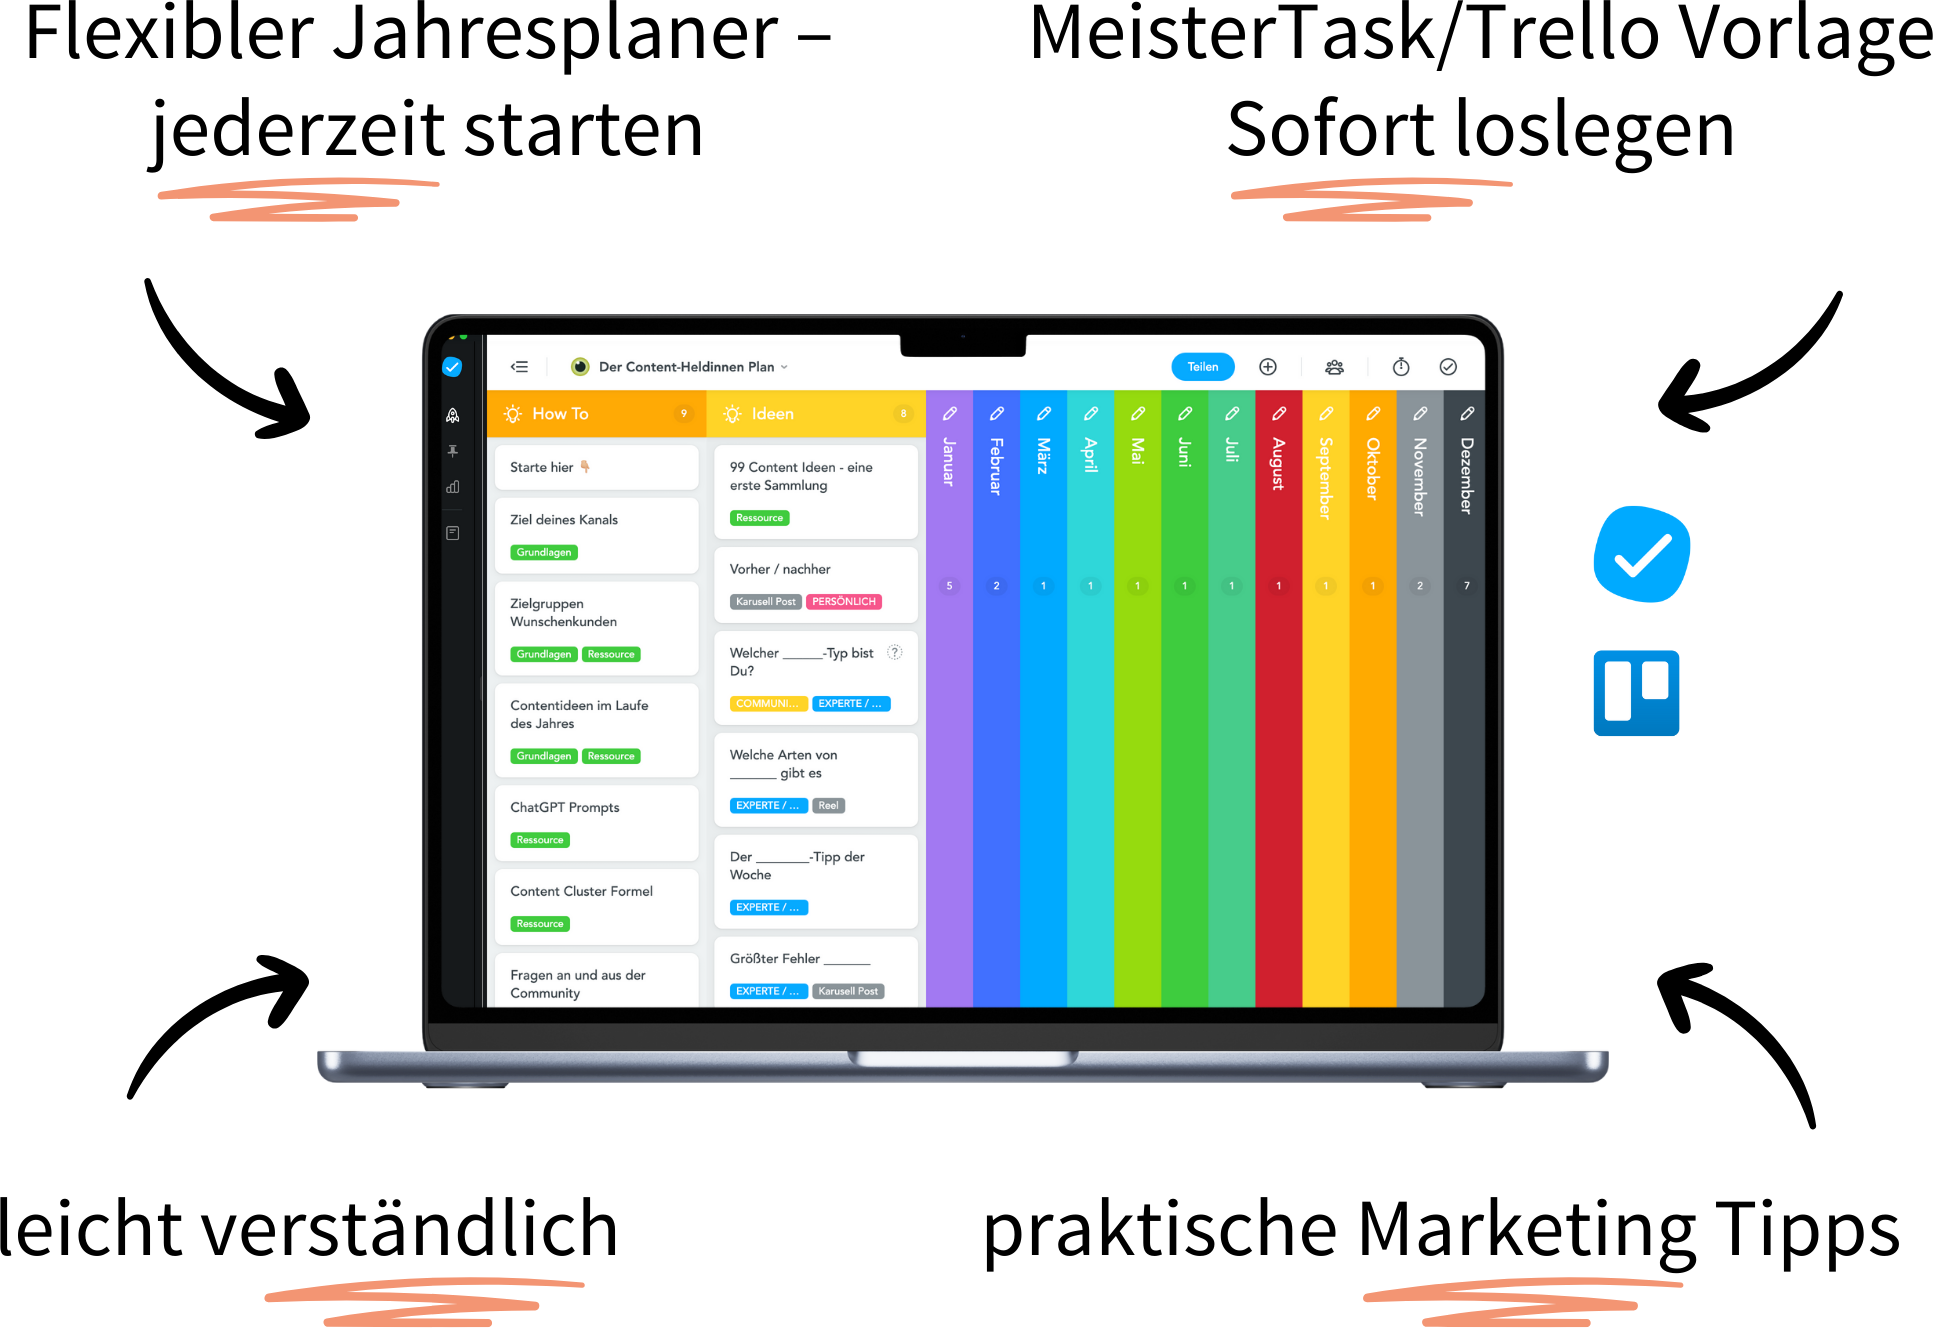 Content Plan Vorlage - flexibler Jahresplaner mit MeisterTask oder Trello, Redaktionsplan im Team, leicht verständlich, praktische Marketing Tipps - Katja Eilders